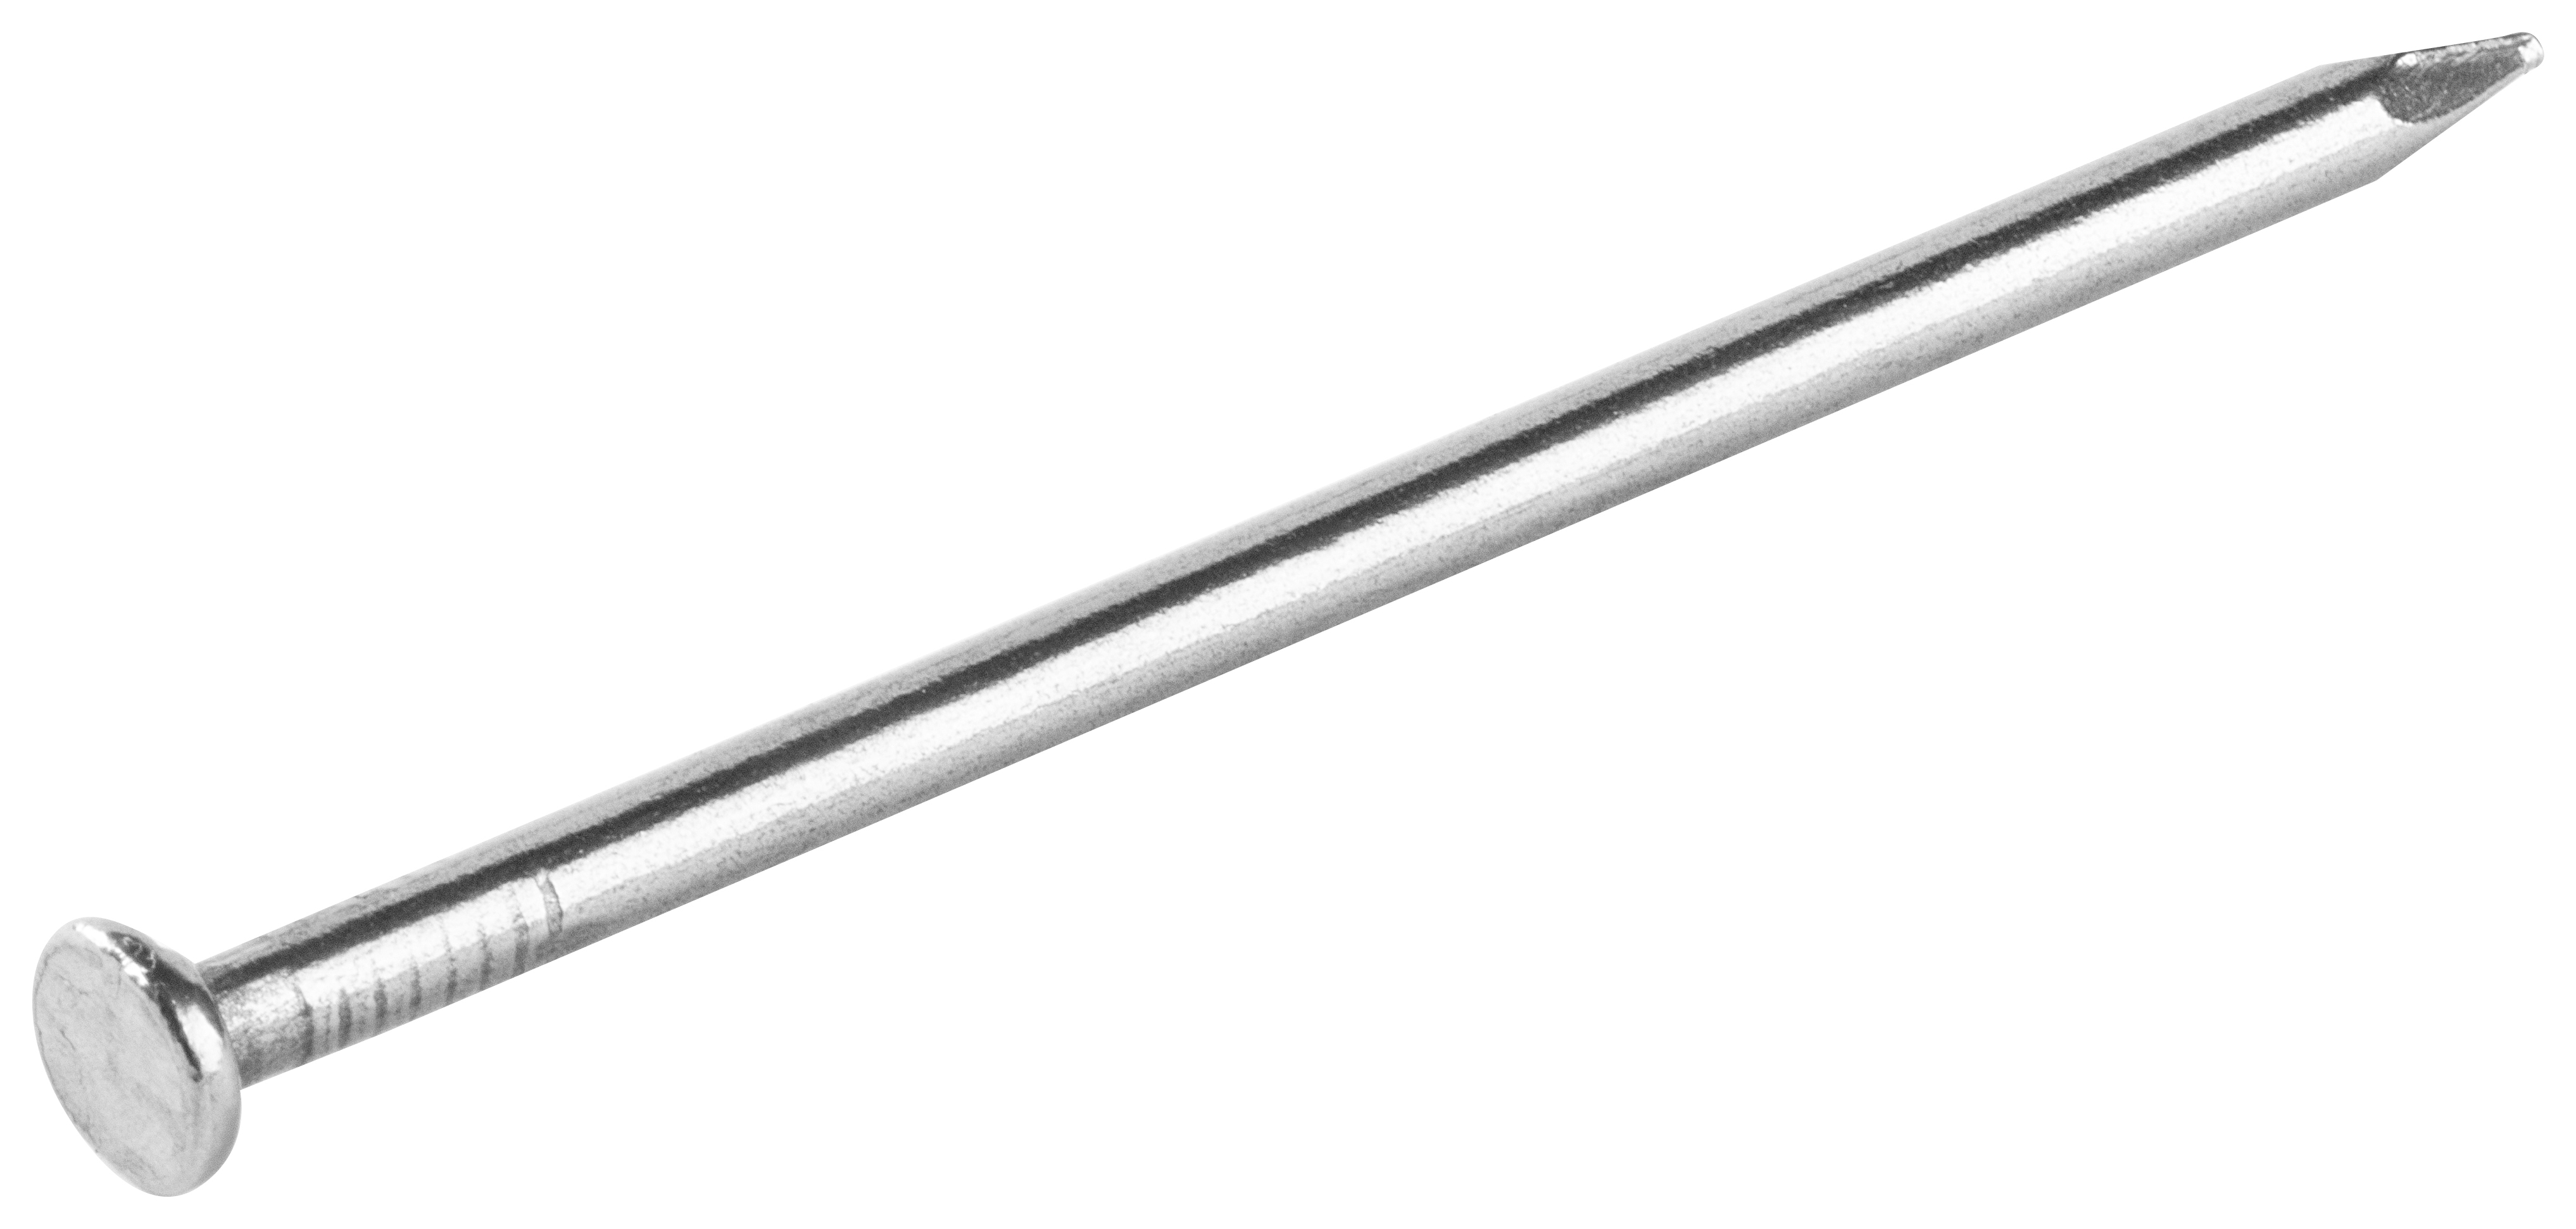 Round Wire Nails - 100 x 4.5mm - 500g